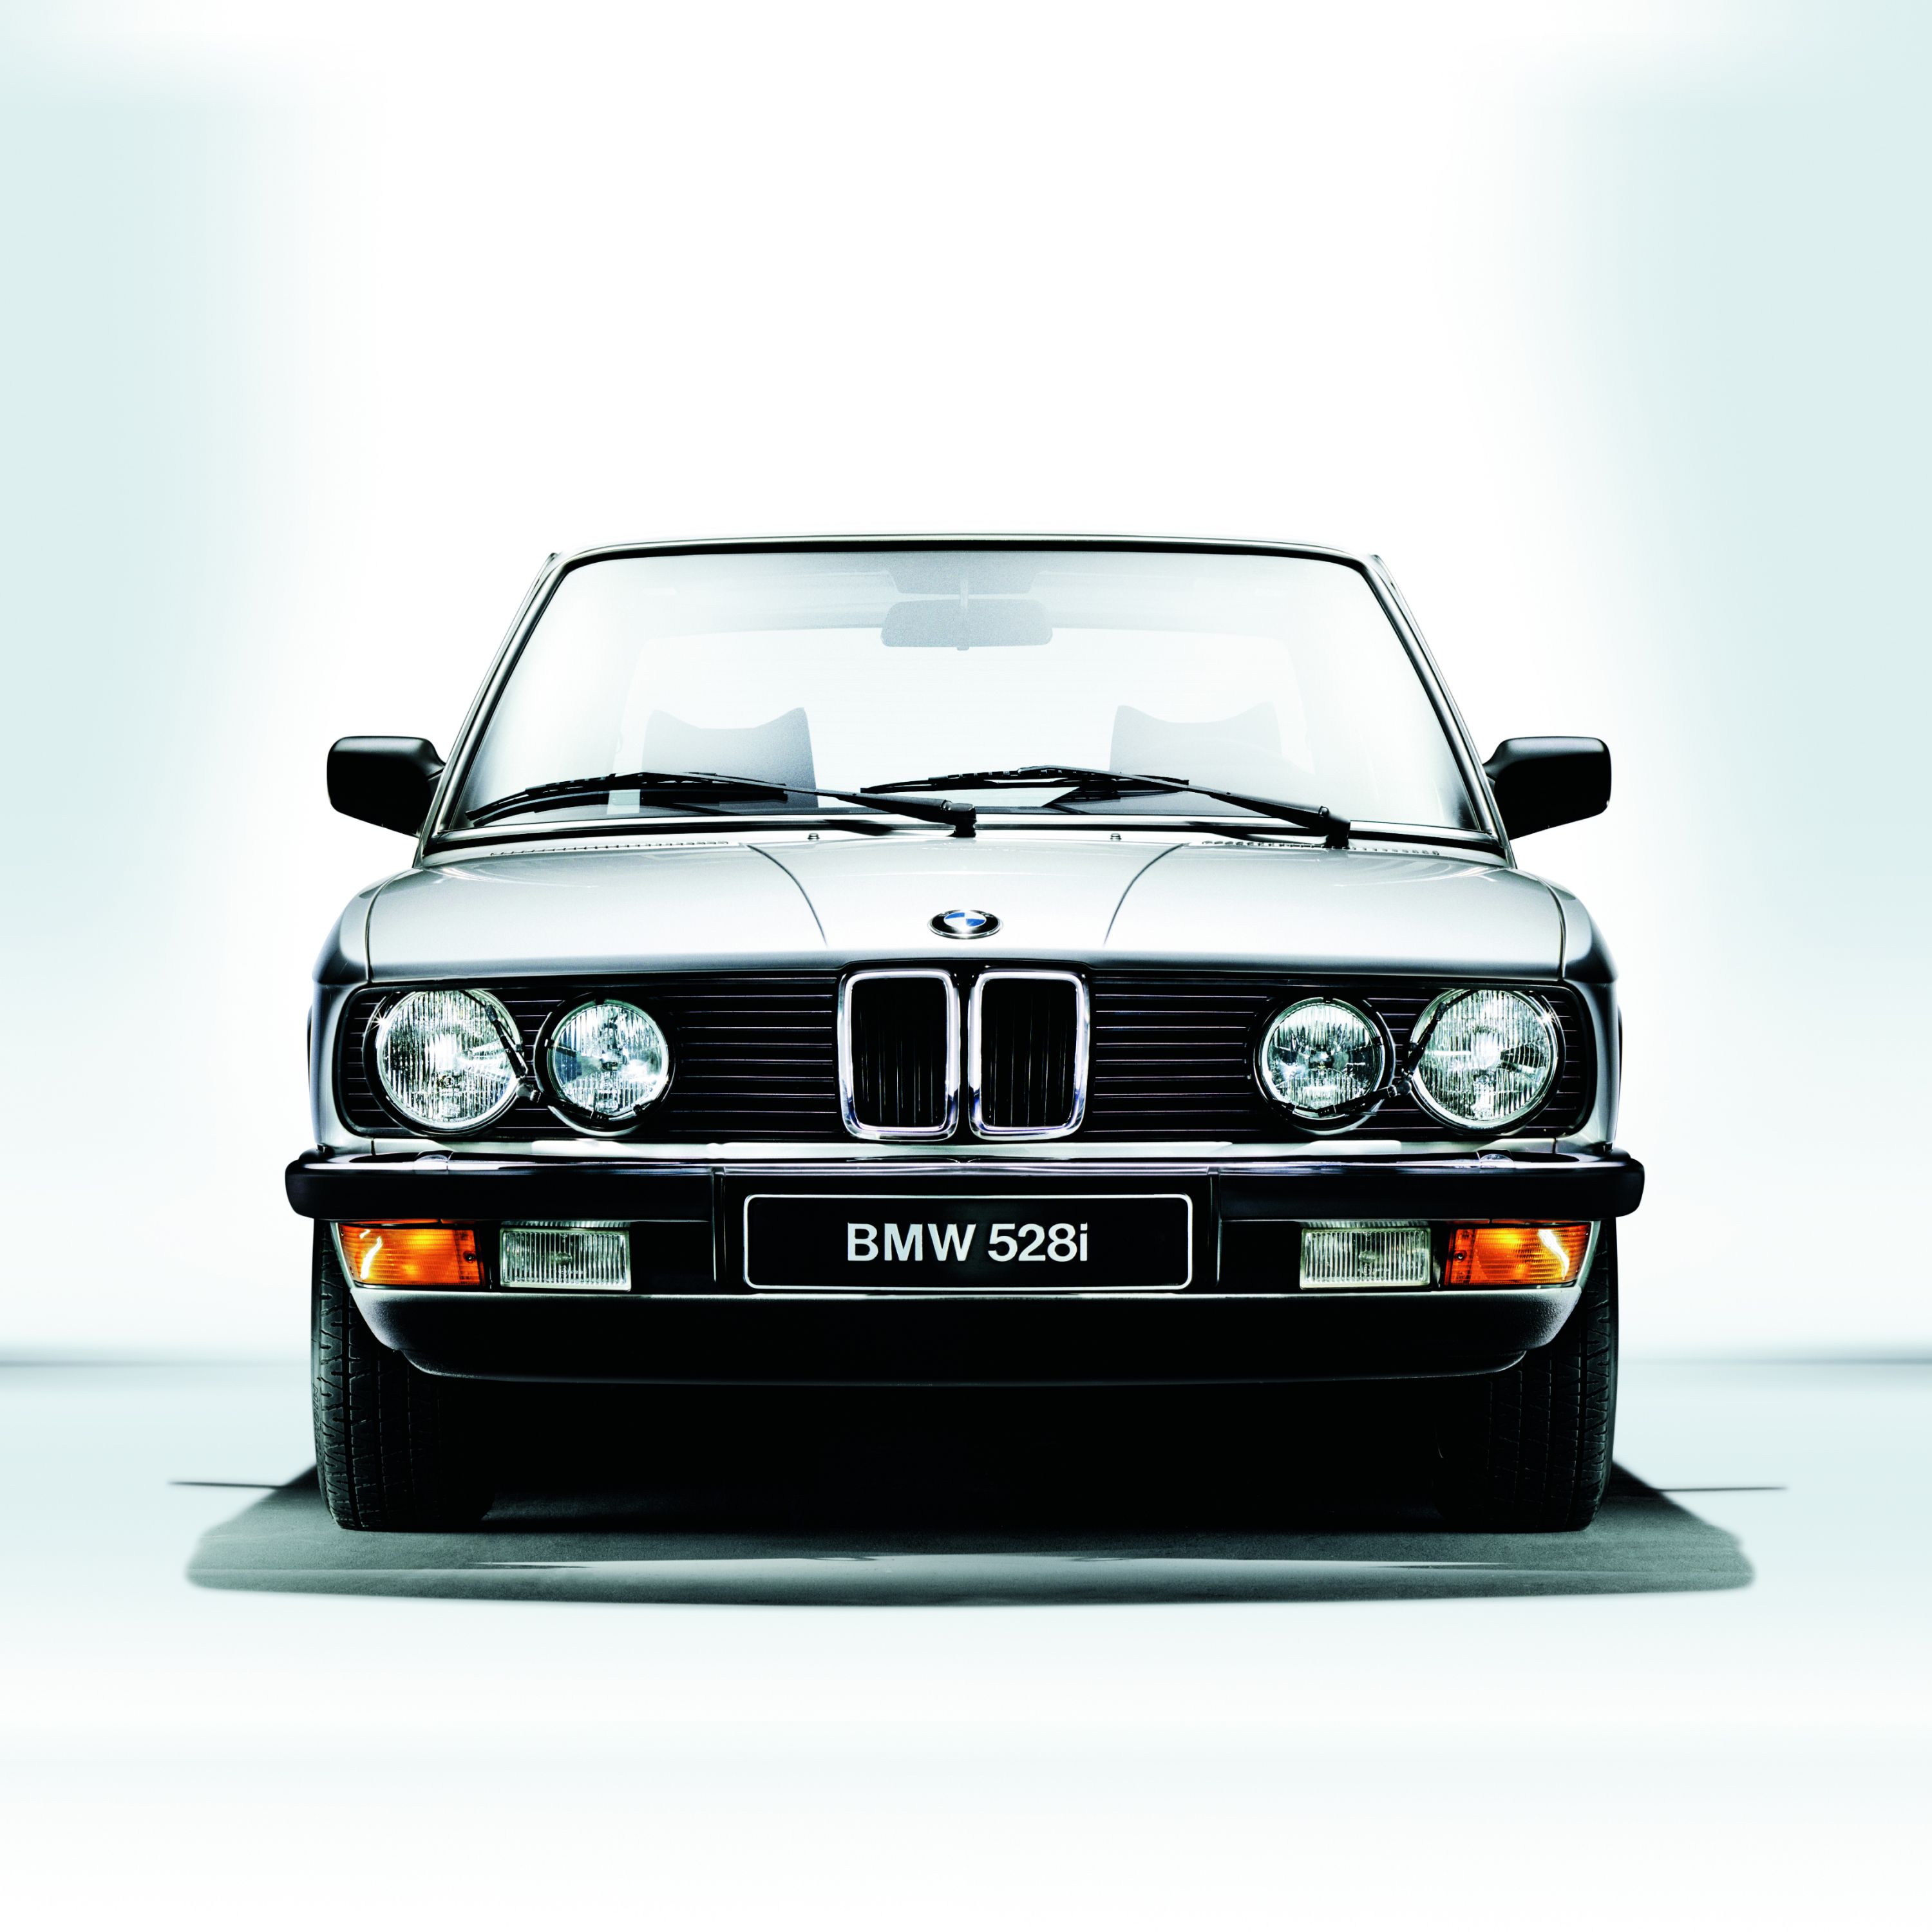 Original BMW Teile und Zubehör, Teile & Zubehör, Leistungen & Kompetenz